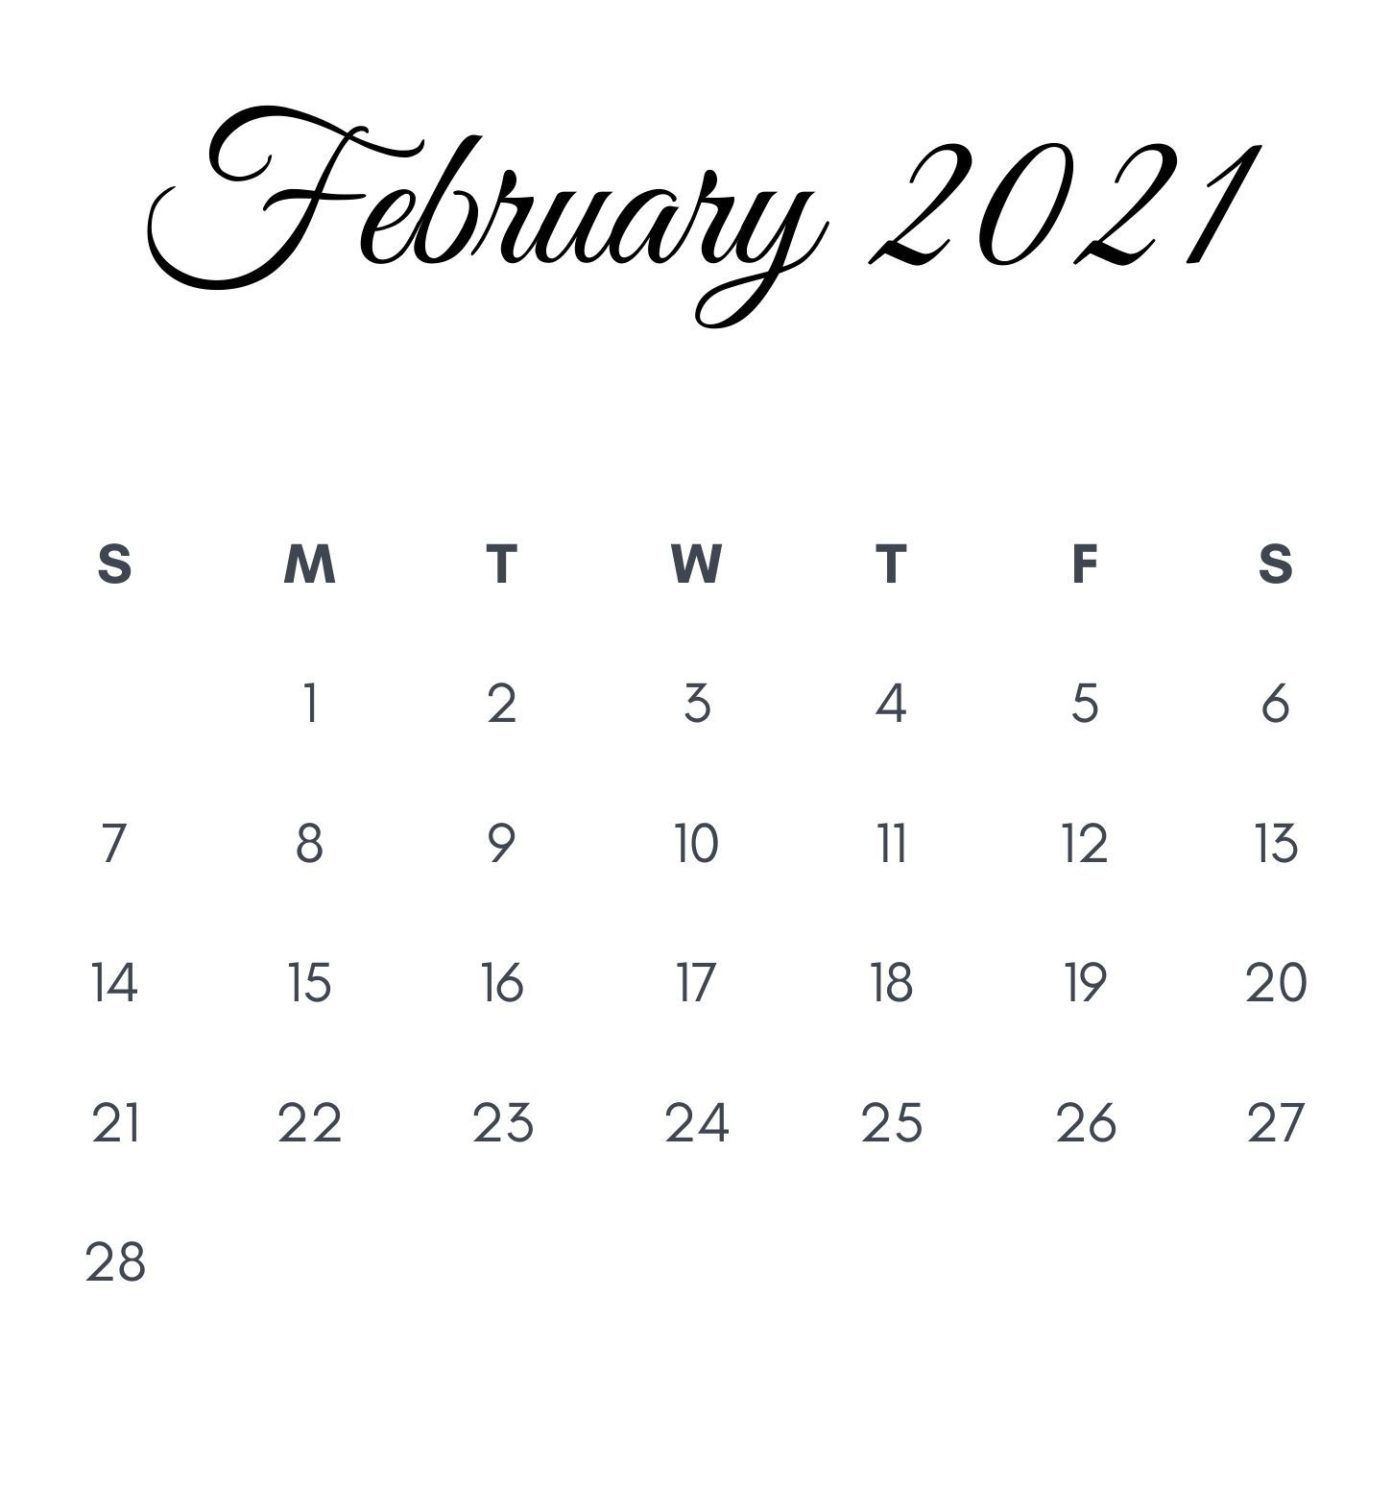 February 2021 Printable Calendar. February calendar, Monthly calendar printable, June calendar printable